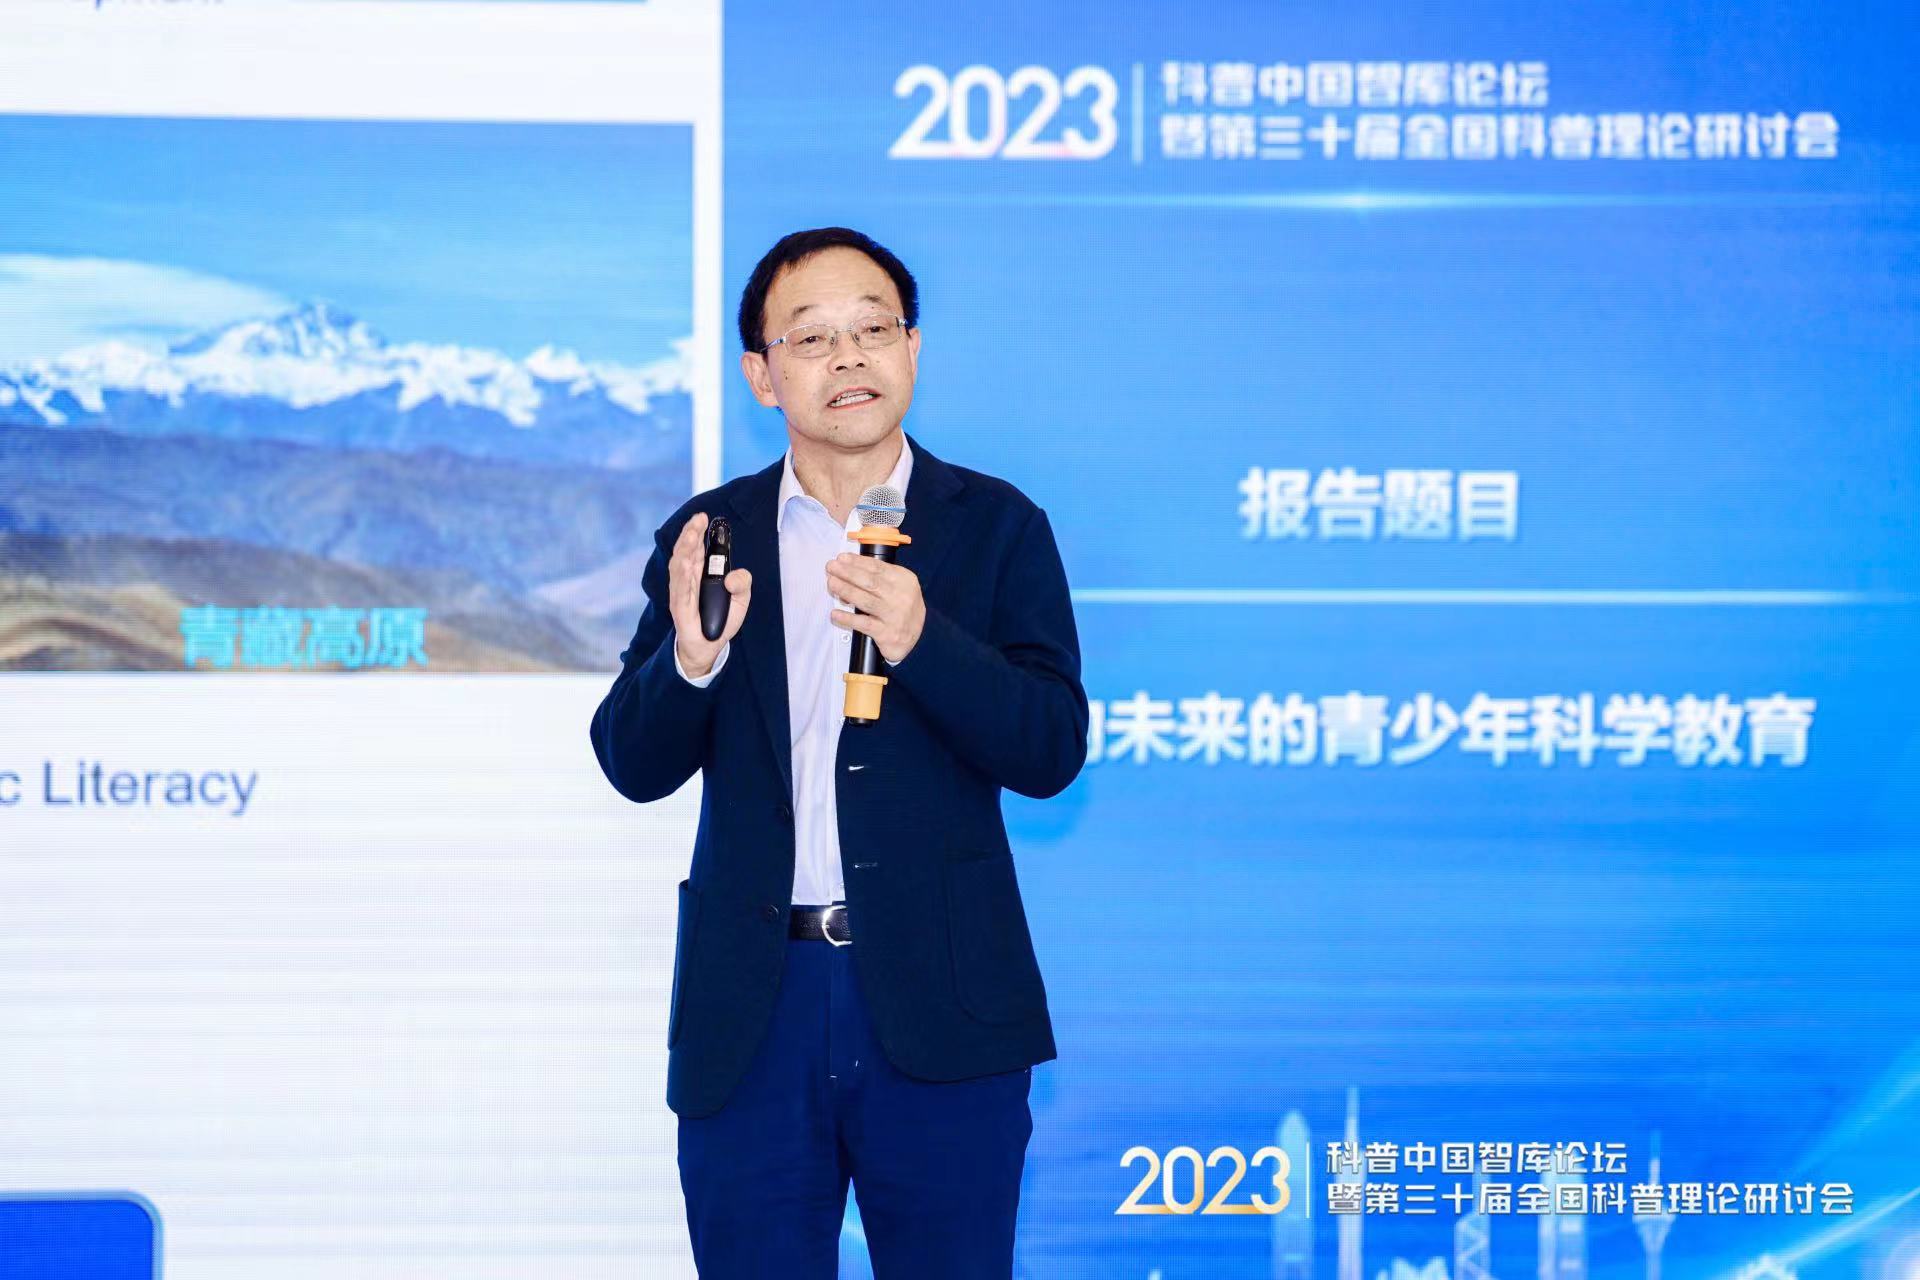 2023年科普中國智庫論壇暨第三十屆全國科普理論研討會在廣州舉辦